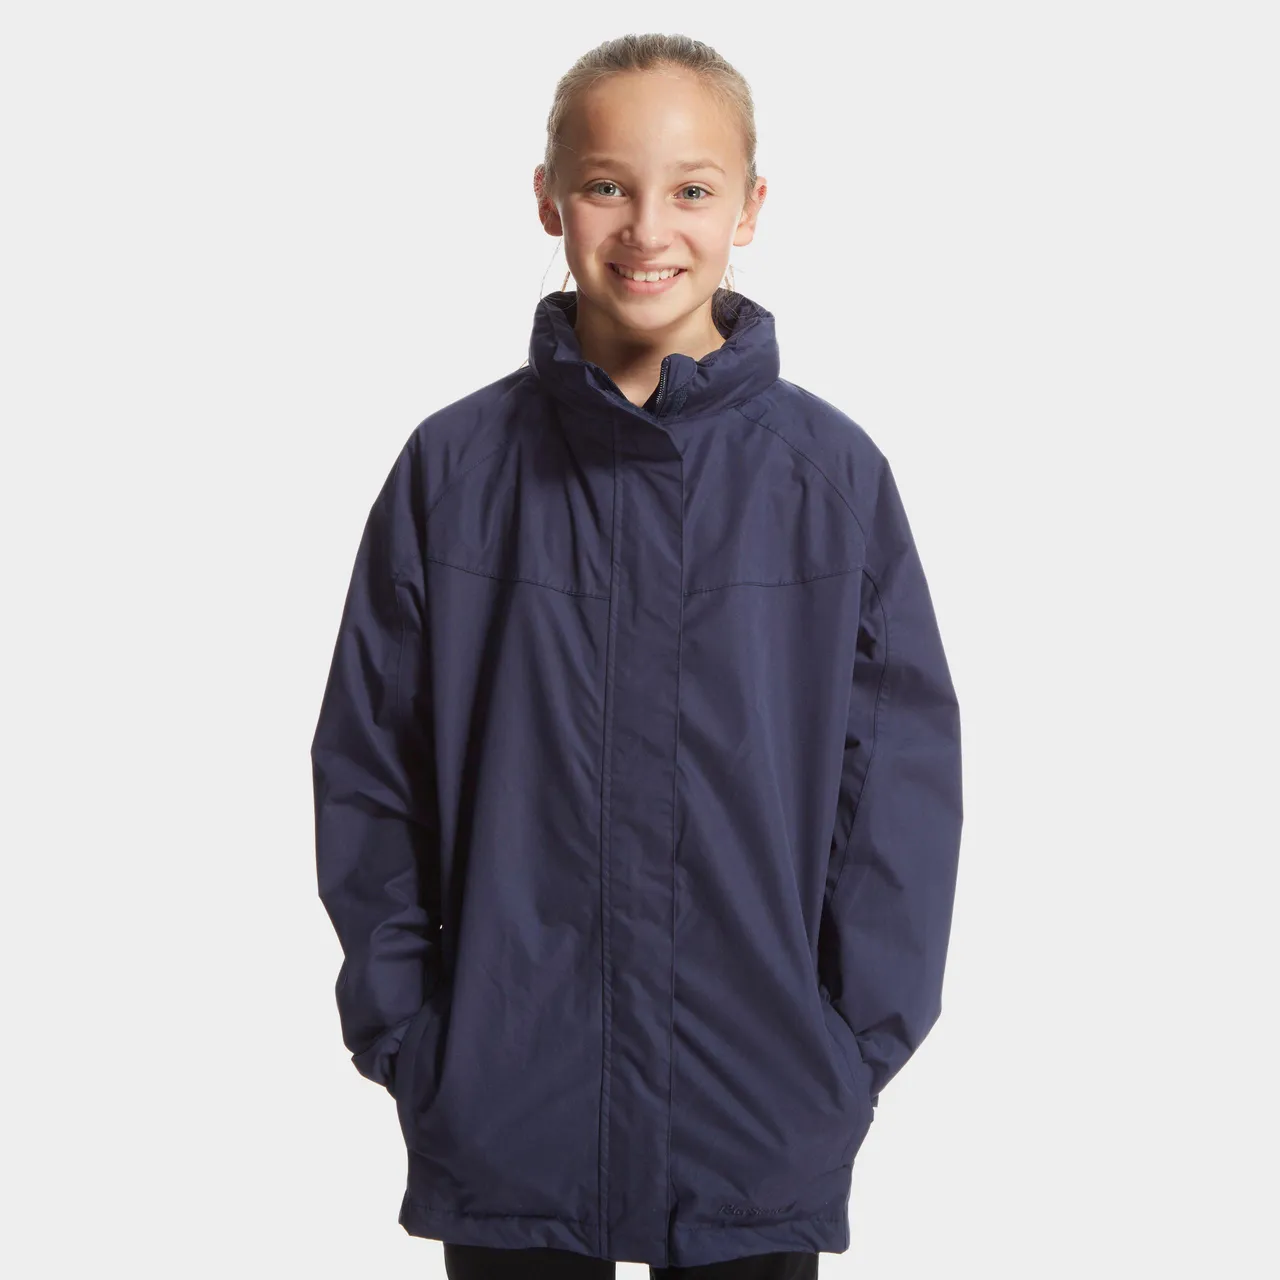 Kid's Waterproof Jacket, Navy